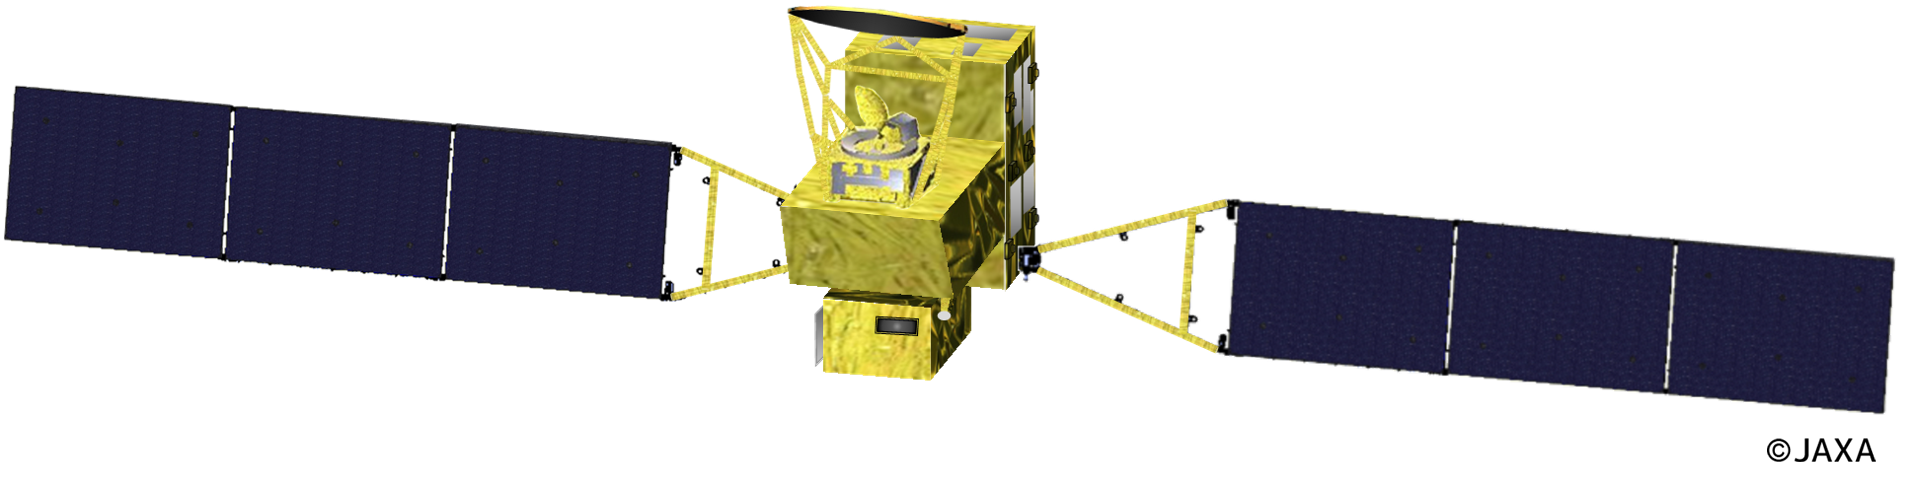 GOSAT-GW spacecraft, artist’s rendition